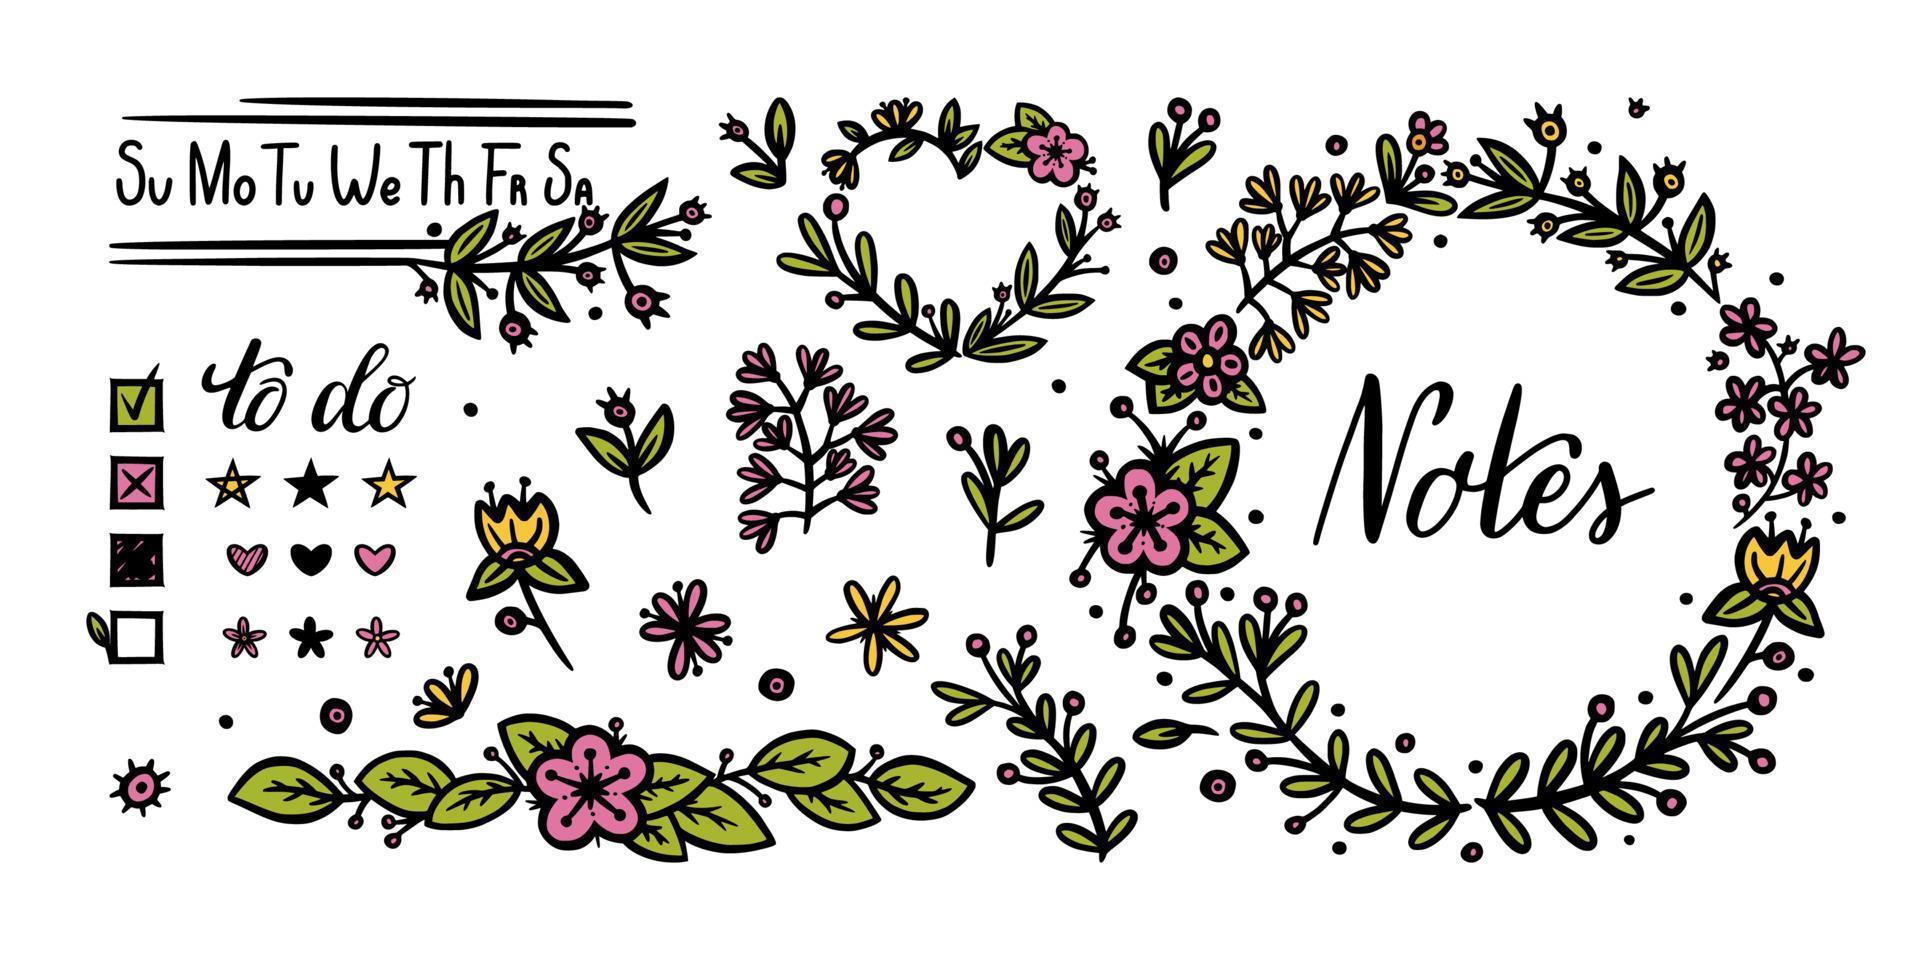 bullet journal elementos florais e de texto para decoração. divisores de flores e caligrafia manuscrita para desenhos de diários. ilustração vetorial doodle vetor